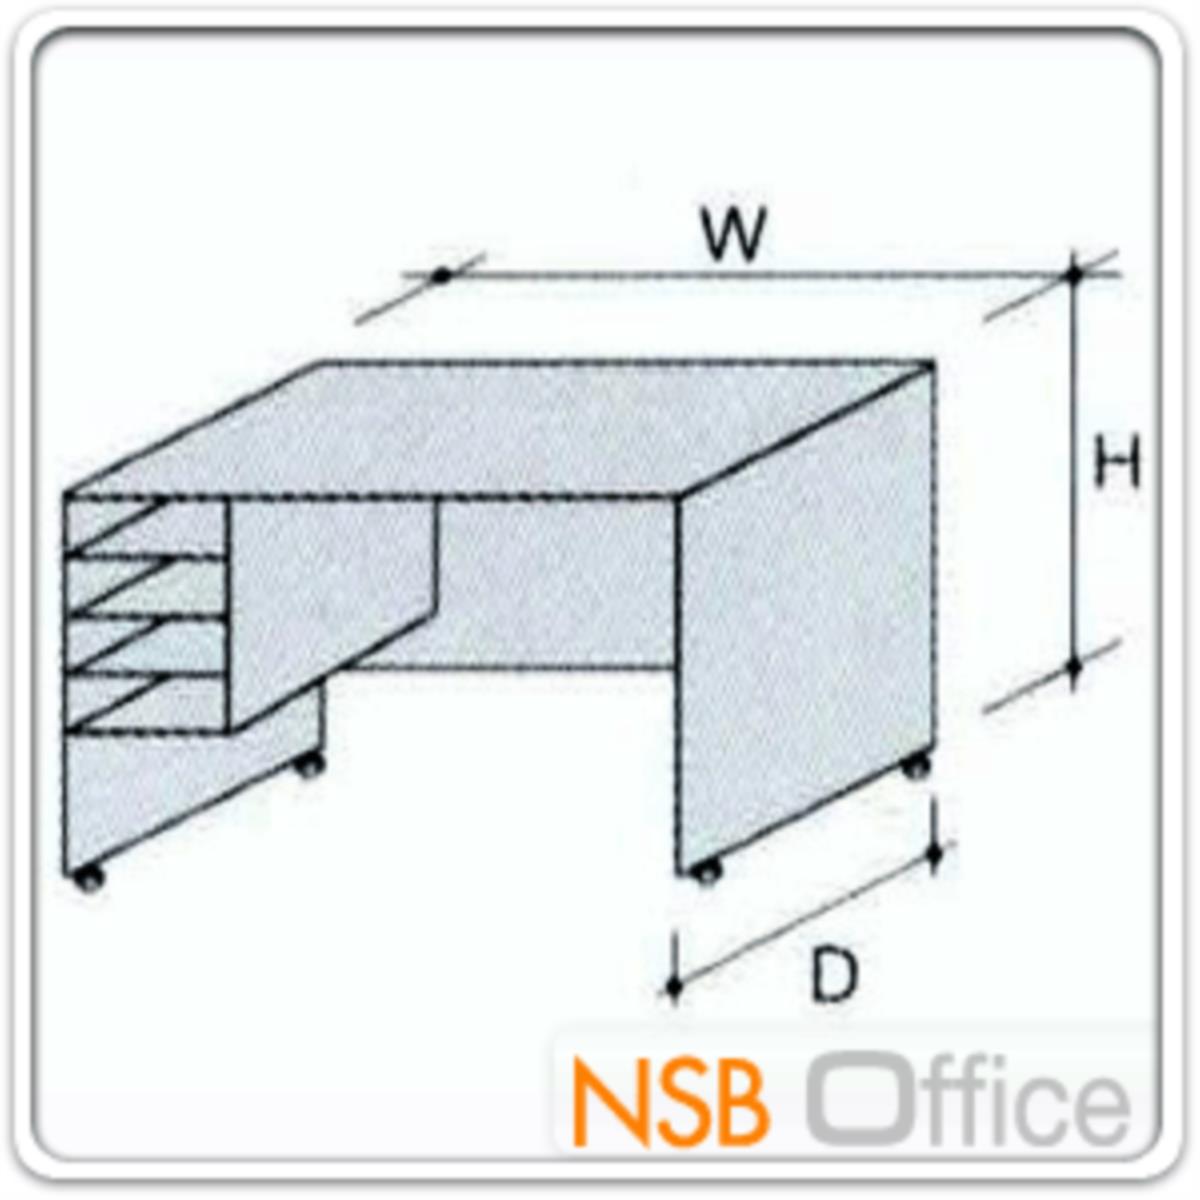 โต๊ะเตี้ยวางพริ้นเตอร์ 4 ช่องโล่ง Print desk - B (เตี้ยกว่าโต๊ะเพื่อให้ใช้งานสะดวก) (42D*65H) cm